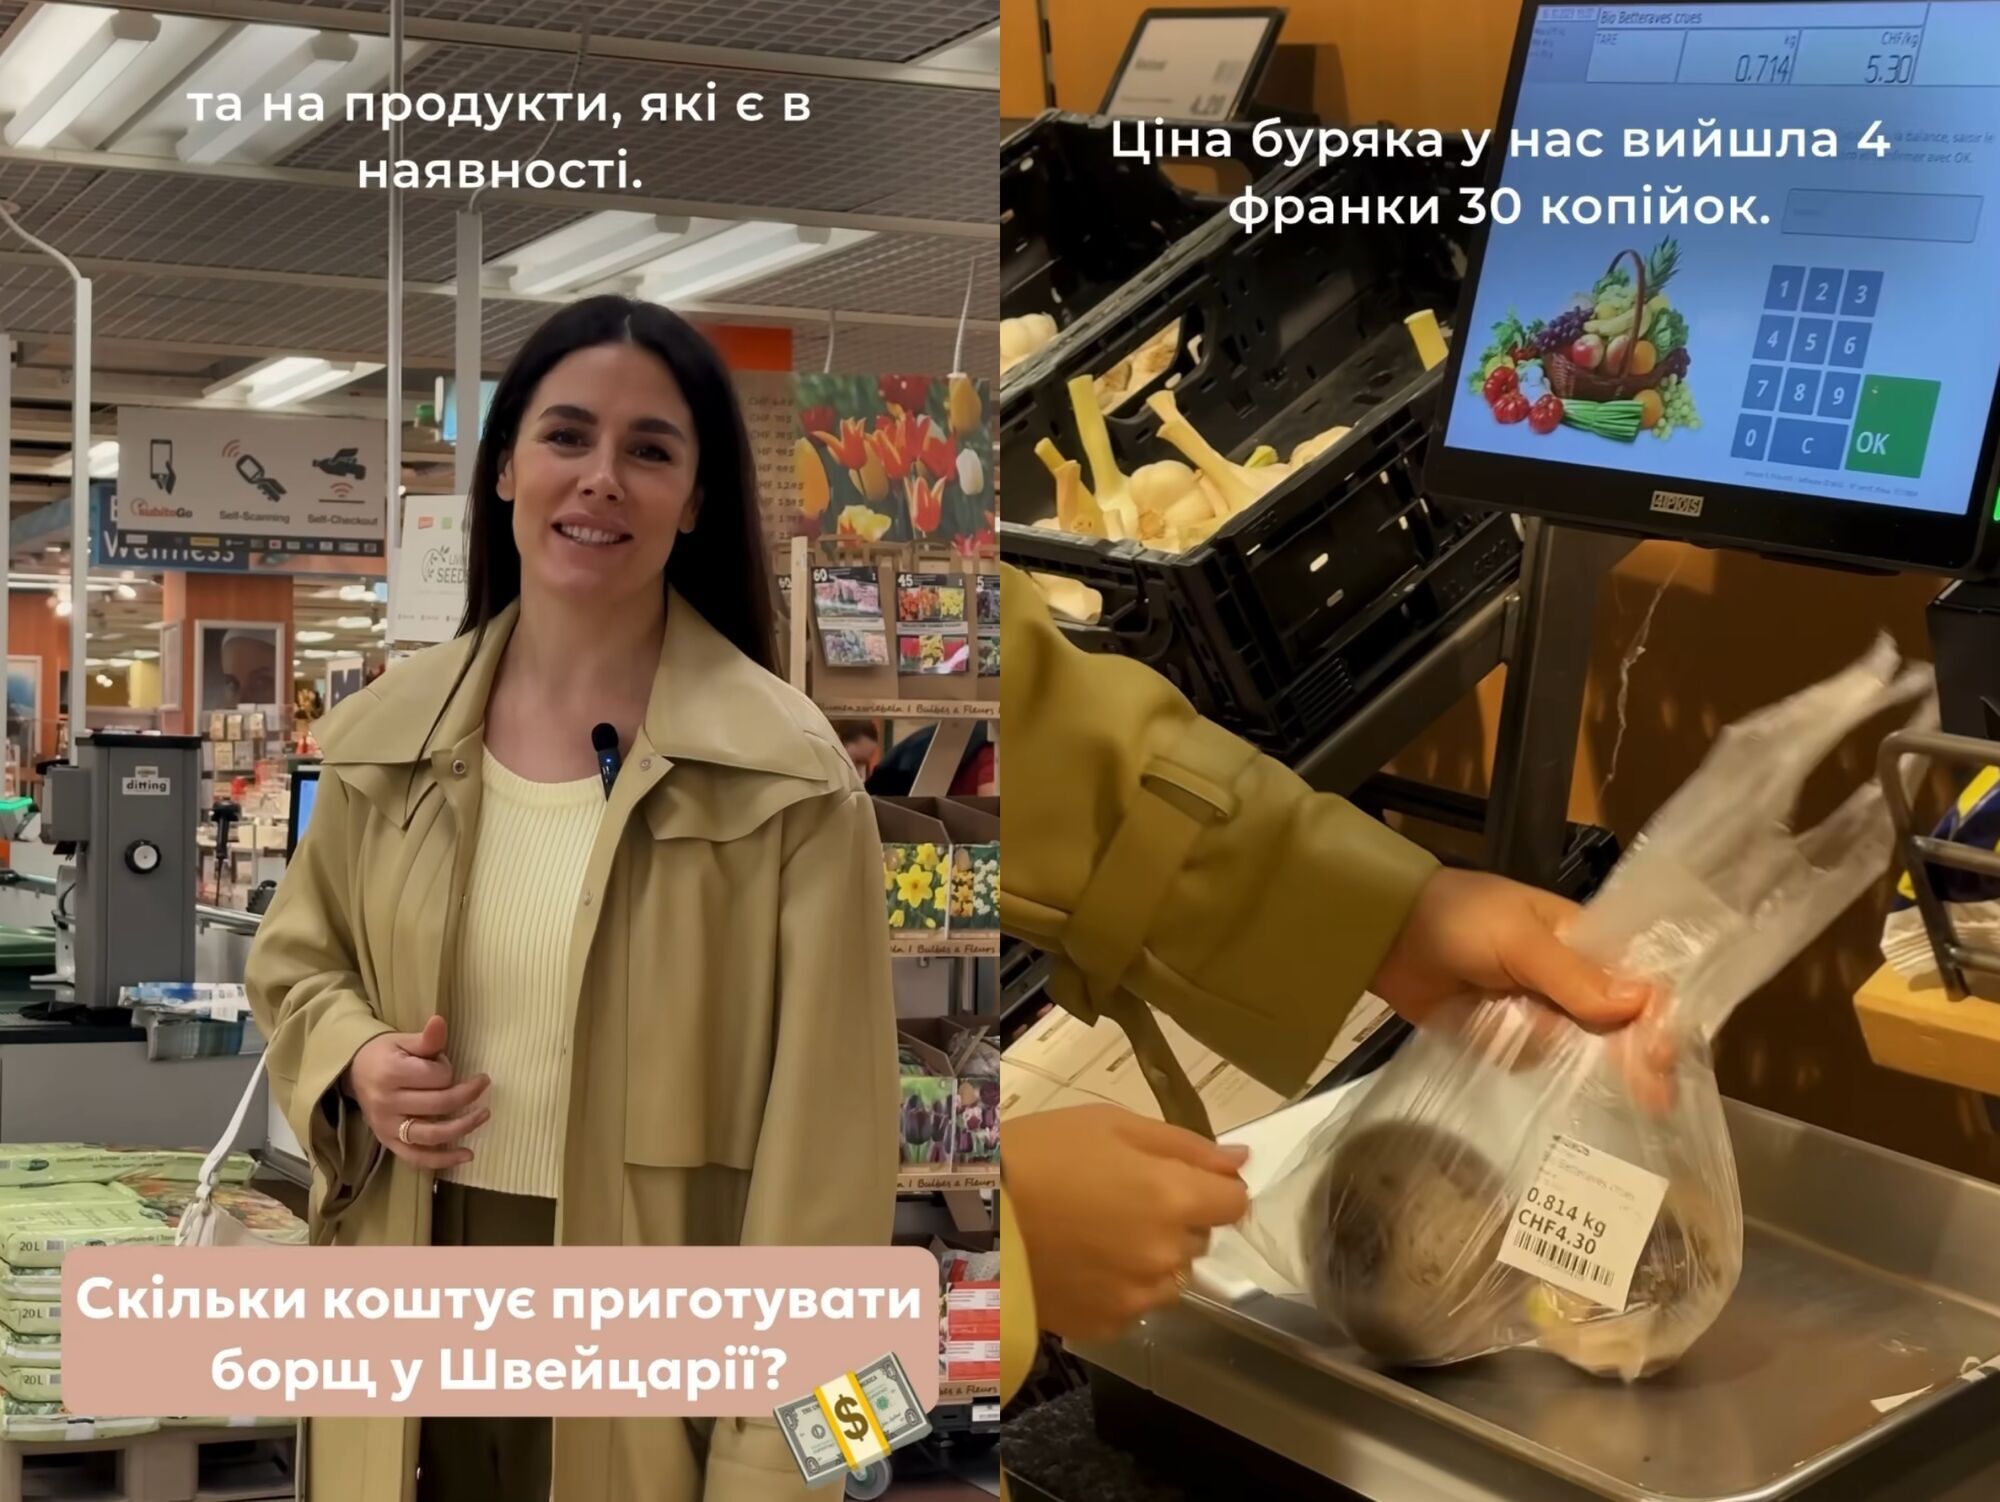 Сколько стоит приготовить борщ в Швейцарии: Иванна Онофрийчук сняла видео с супермаркета, где только капуста обошлась в 350 грн